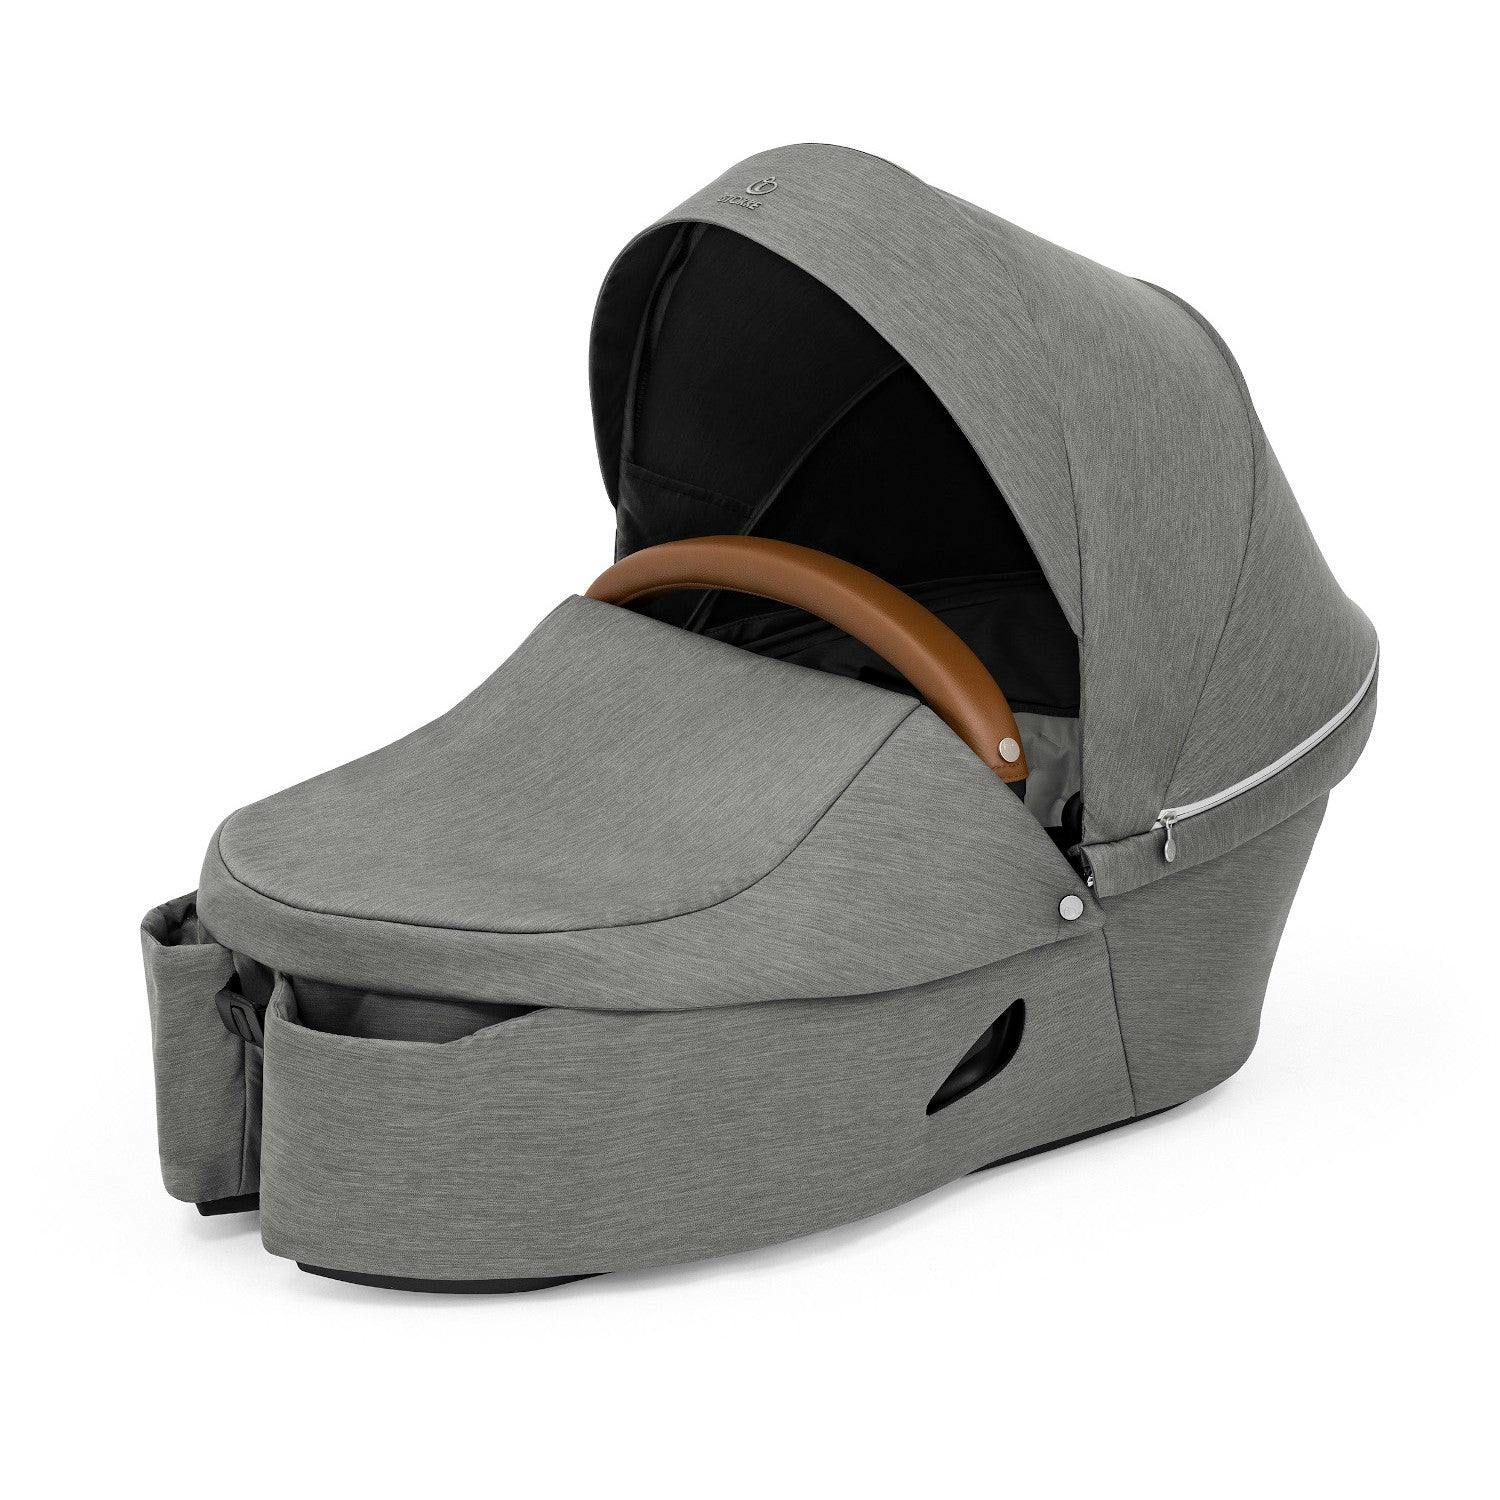 Stokke Xplory X Stroller Carry Cot Modern Grey